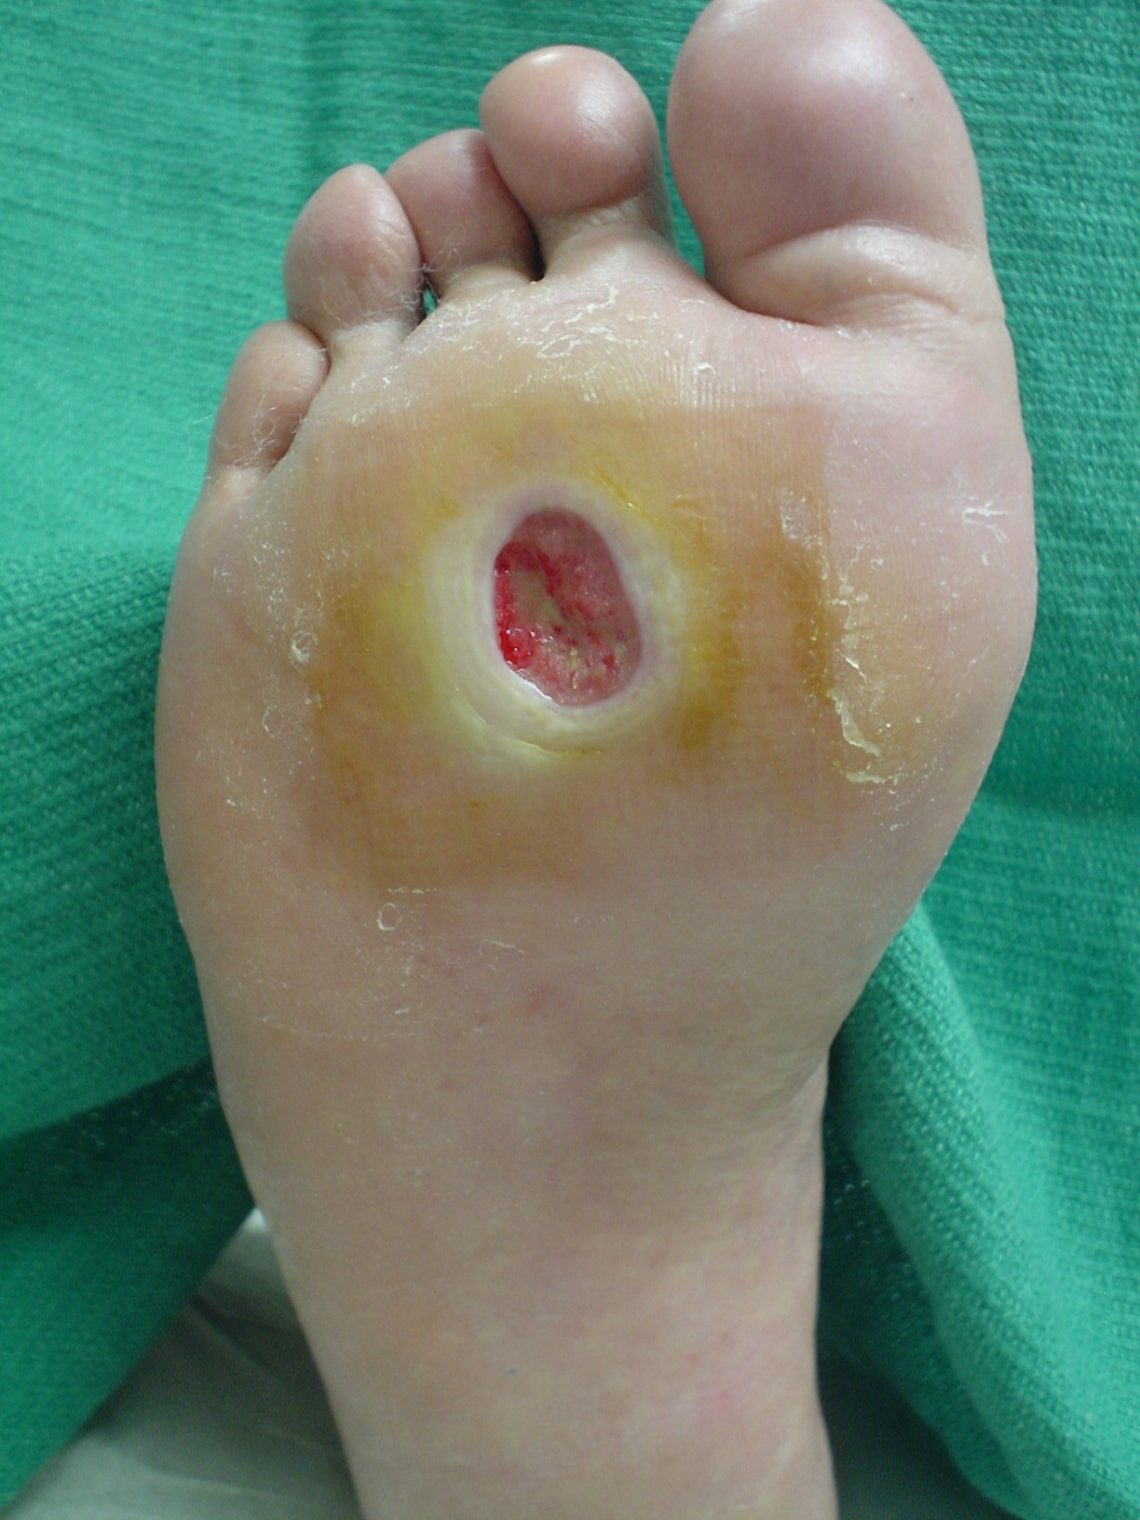 Diabetic Foot Ulcer